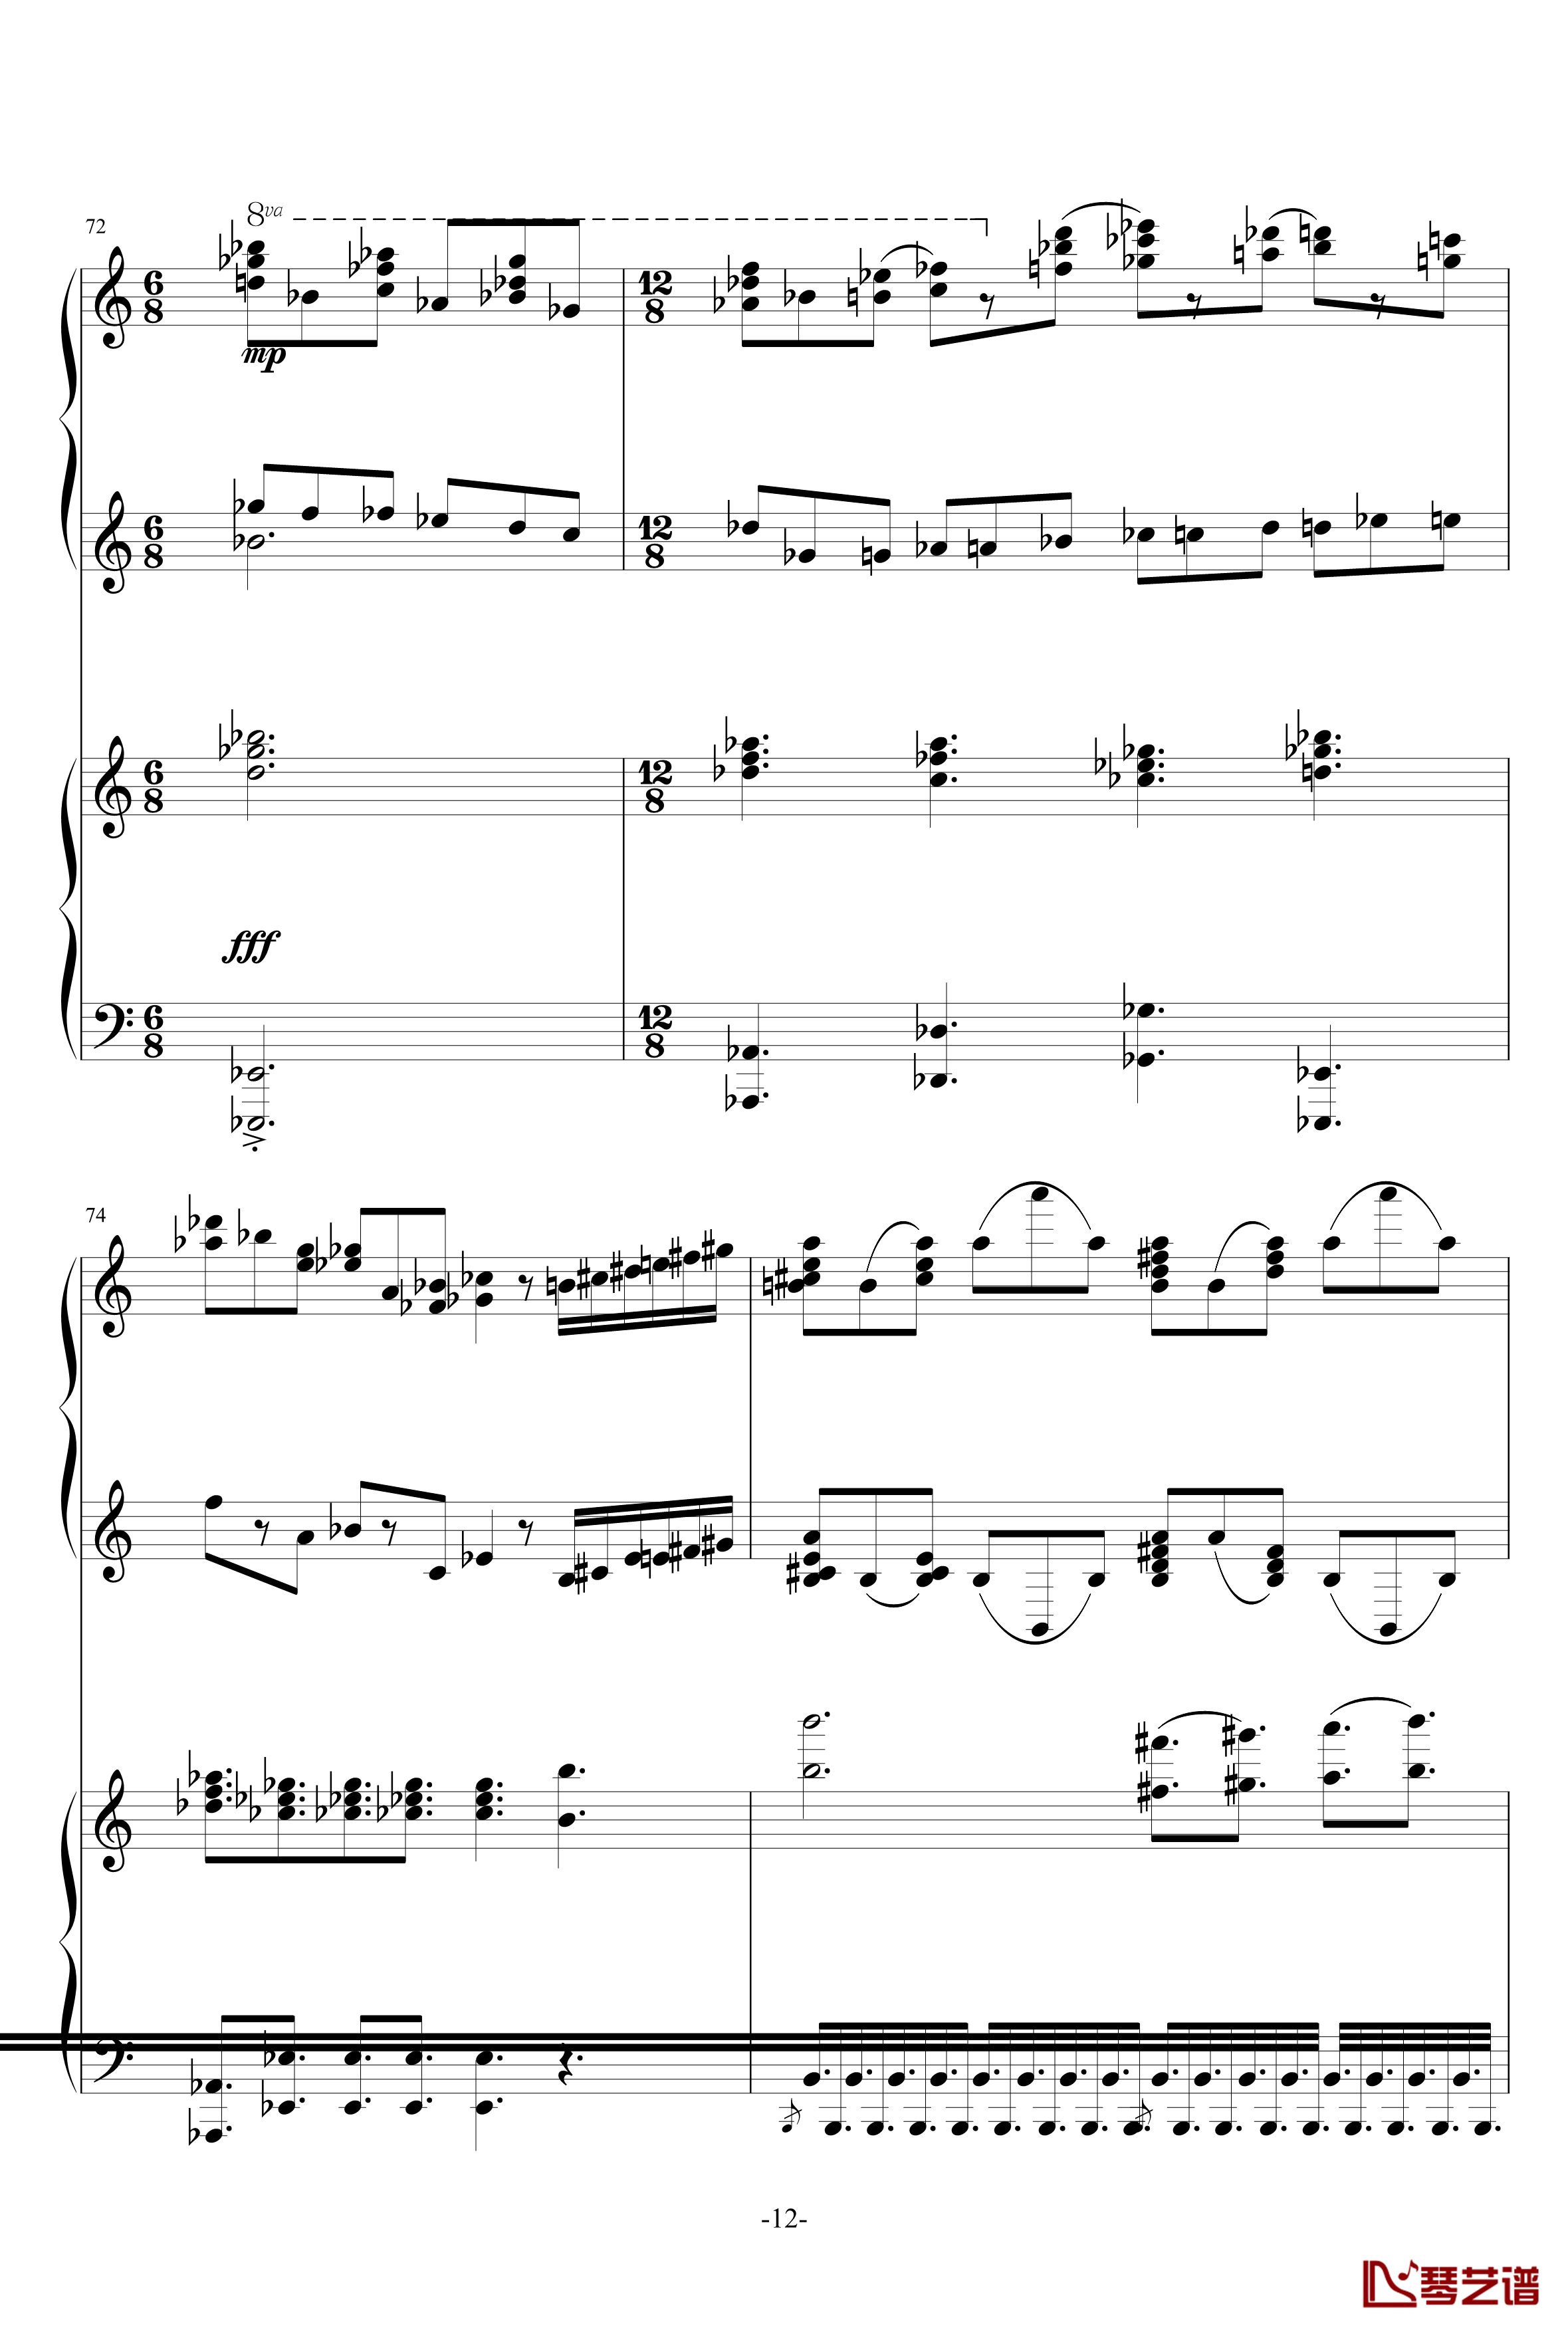 普罗科菲耶夫第三钢琴协奏曲第二乐章钢琴谱12